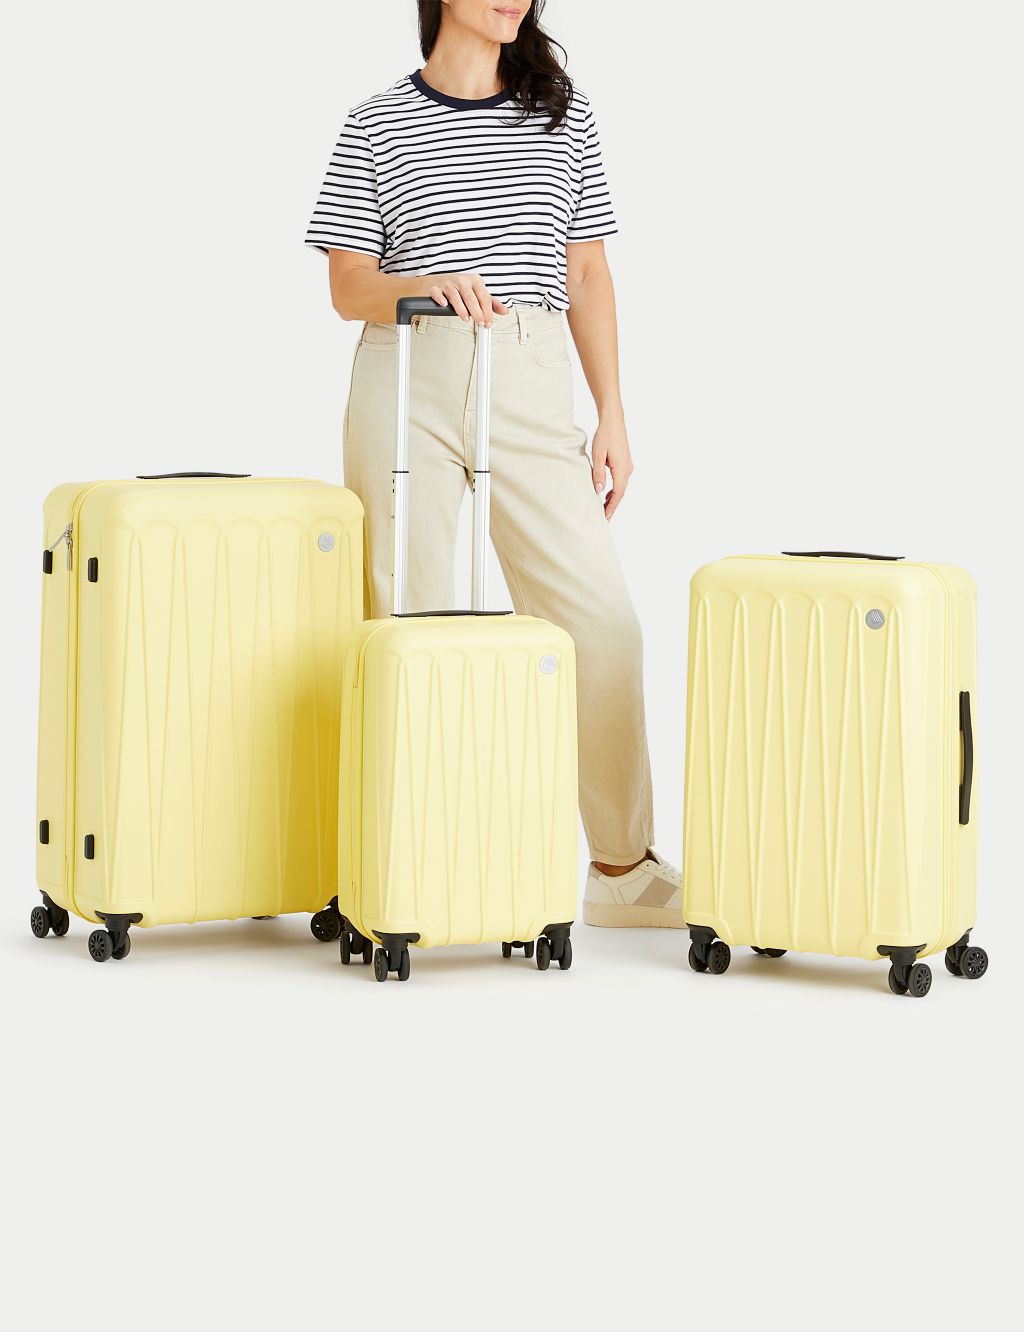 Amalfi 4 Wheel Hard Shell Medium Suitcase 6 of 10